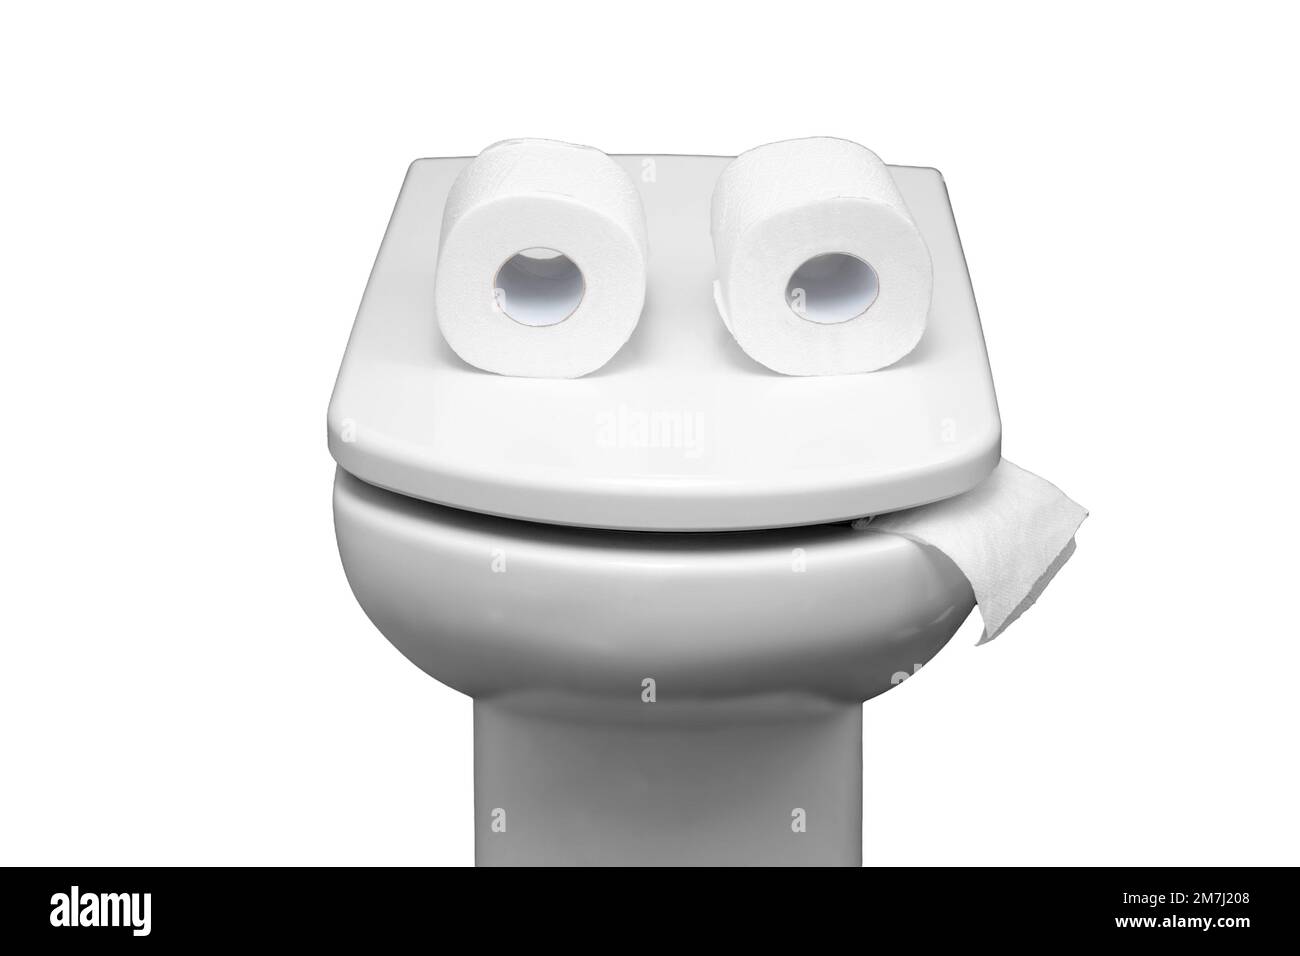 Toilettenschüssel mit zwei Rollen Papier, ähnlich wie Augen oder Gläser, isoliert auf weißem Hintergrund. Komisches Konzept, dass das Toilettenpapier ausgeht Stockfoto